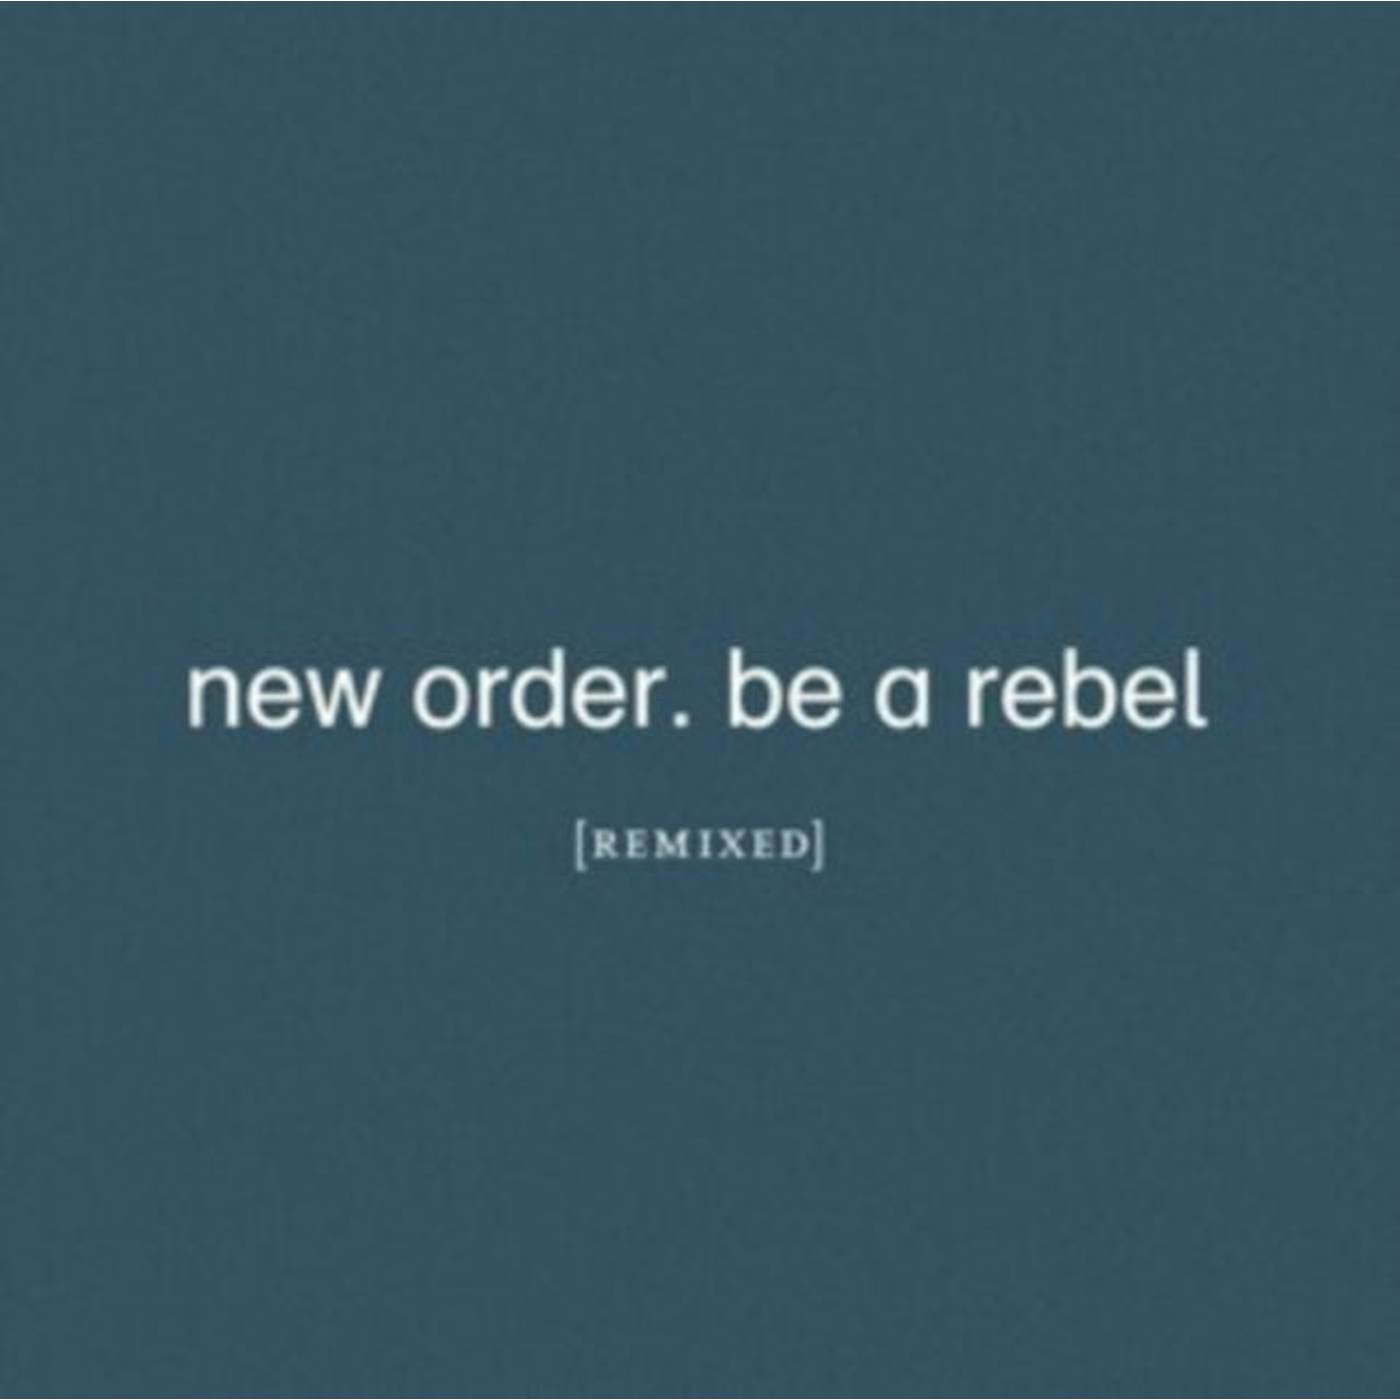 New Order LP Vinyl Record - Be A Rebel Remixed